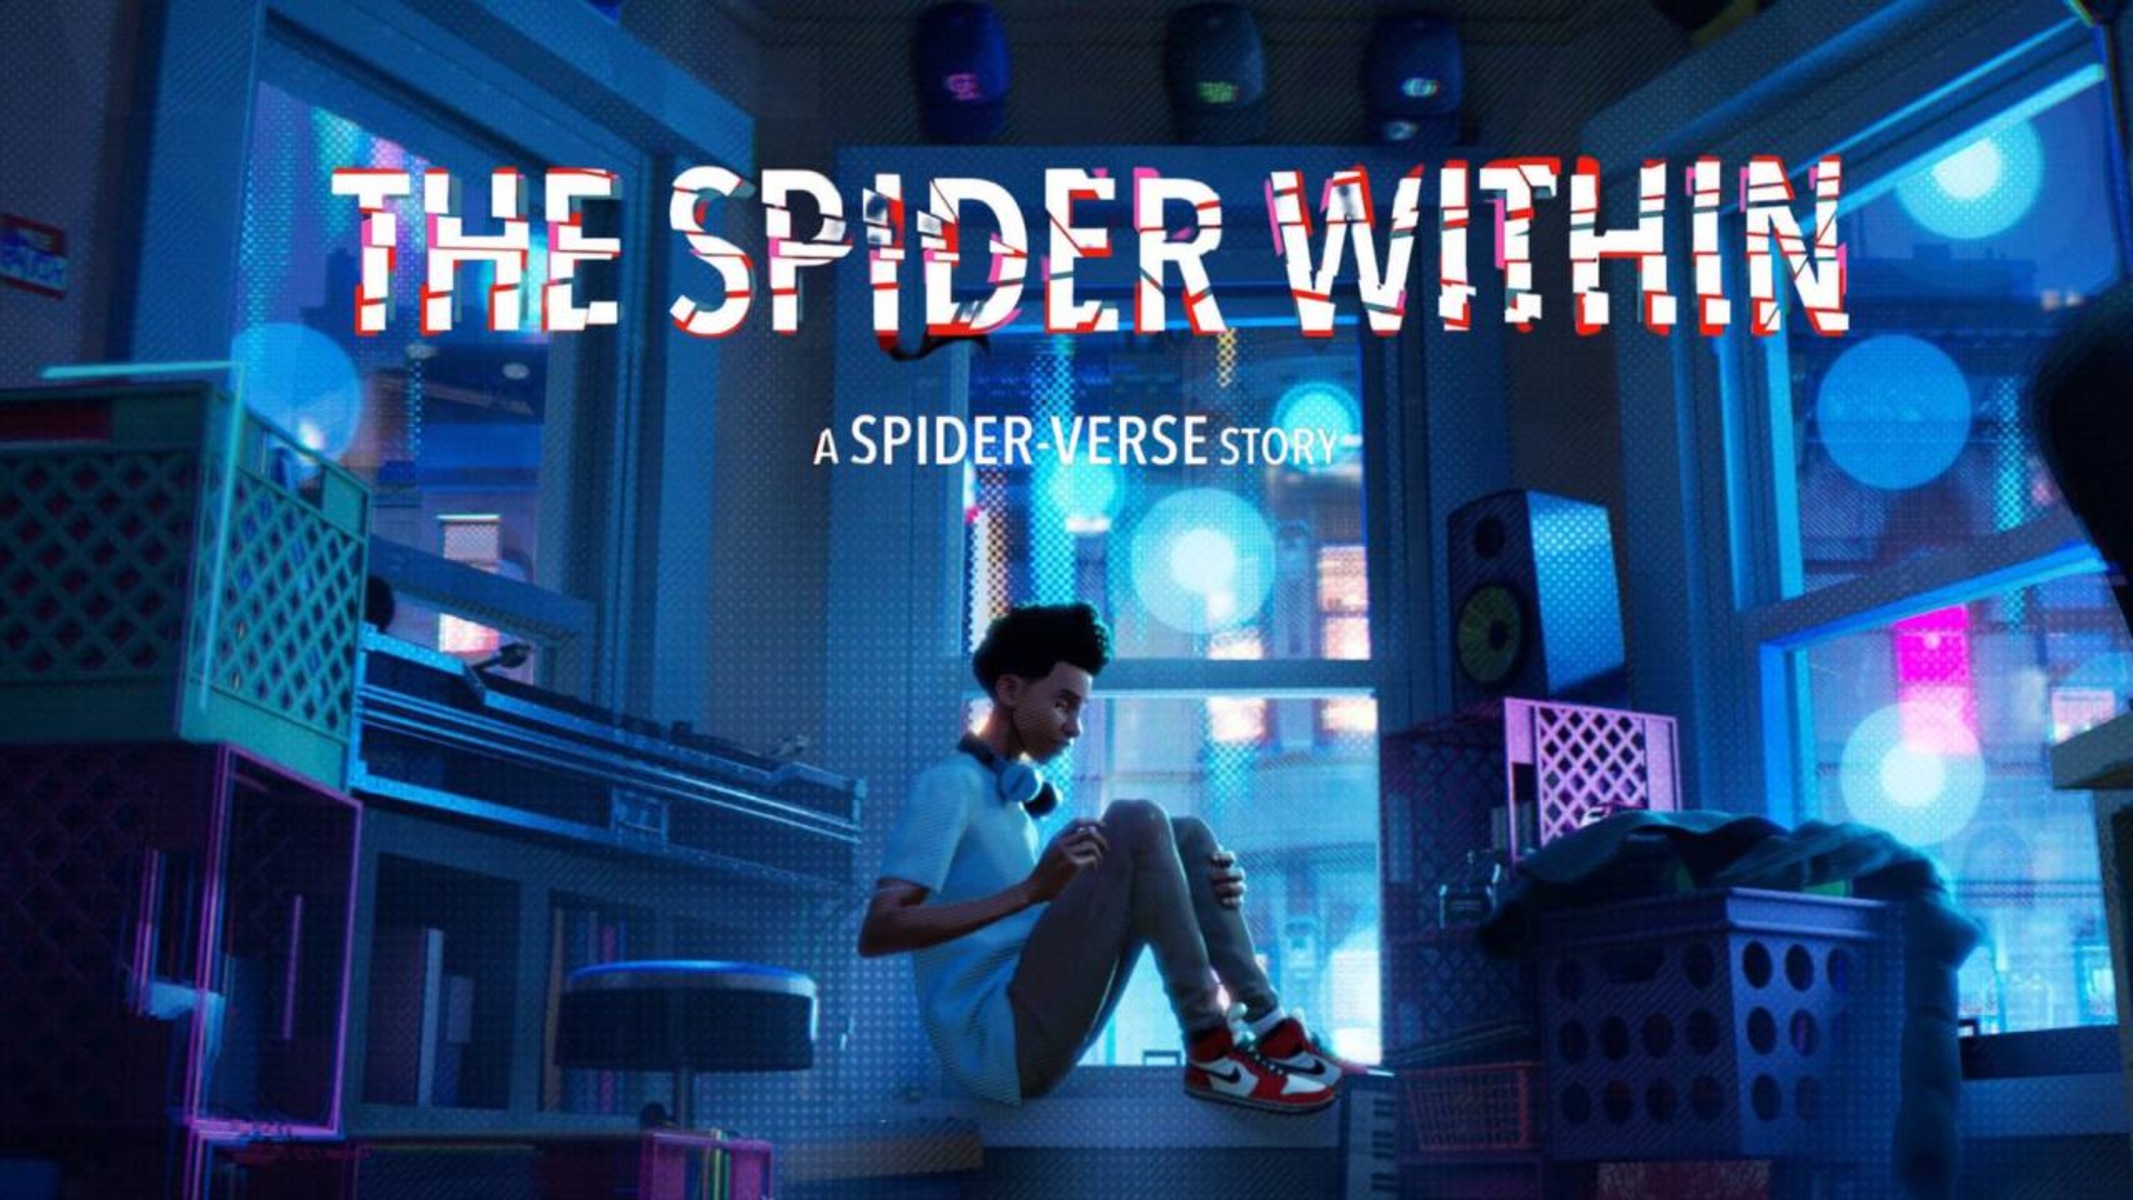 Il protagonista di "The Spider Within", Miles Morales, seduto nella sua camera, con il logo del cortometraggio a svettare sopra di lui.